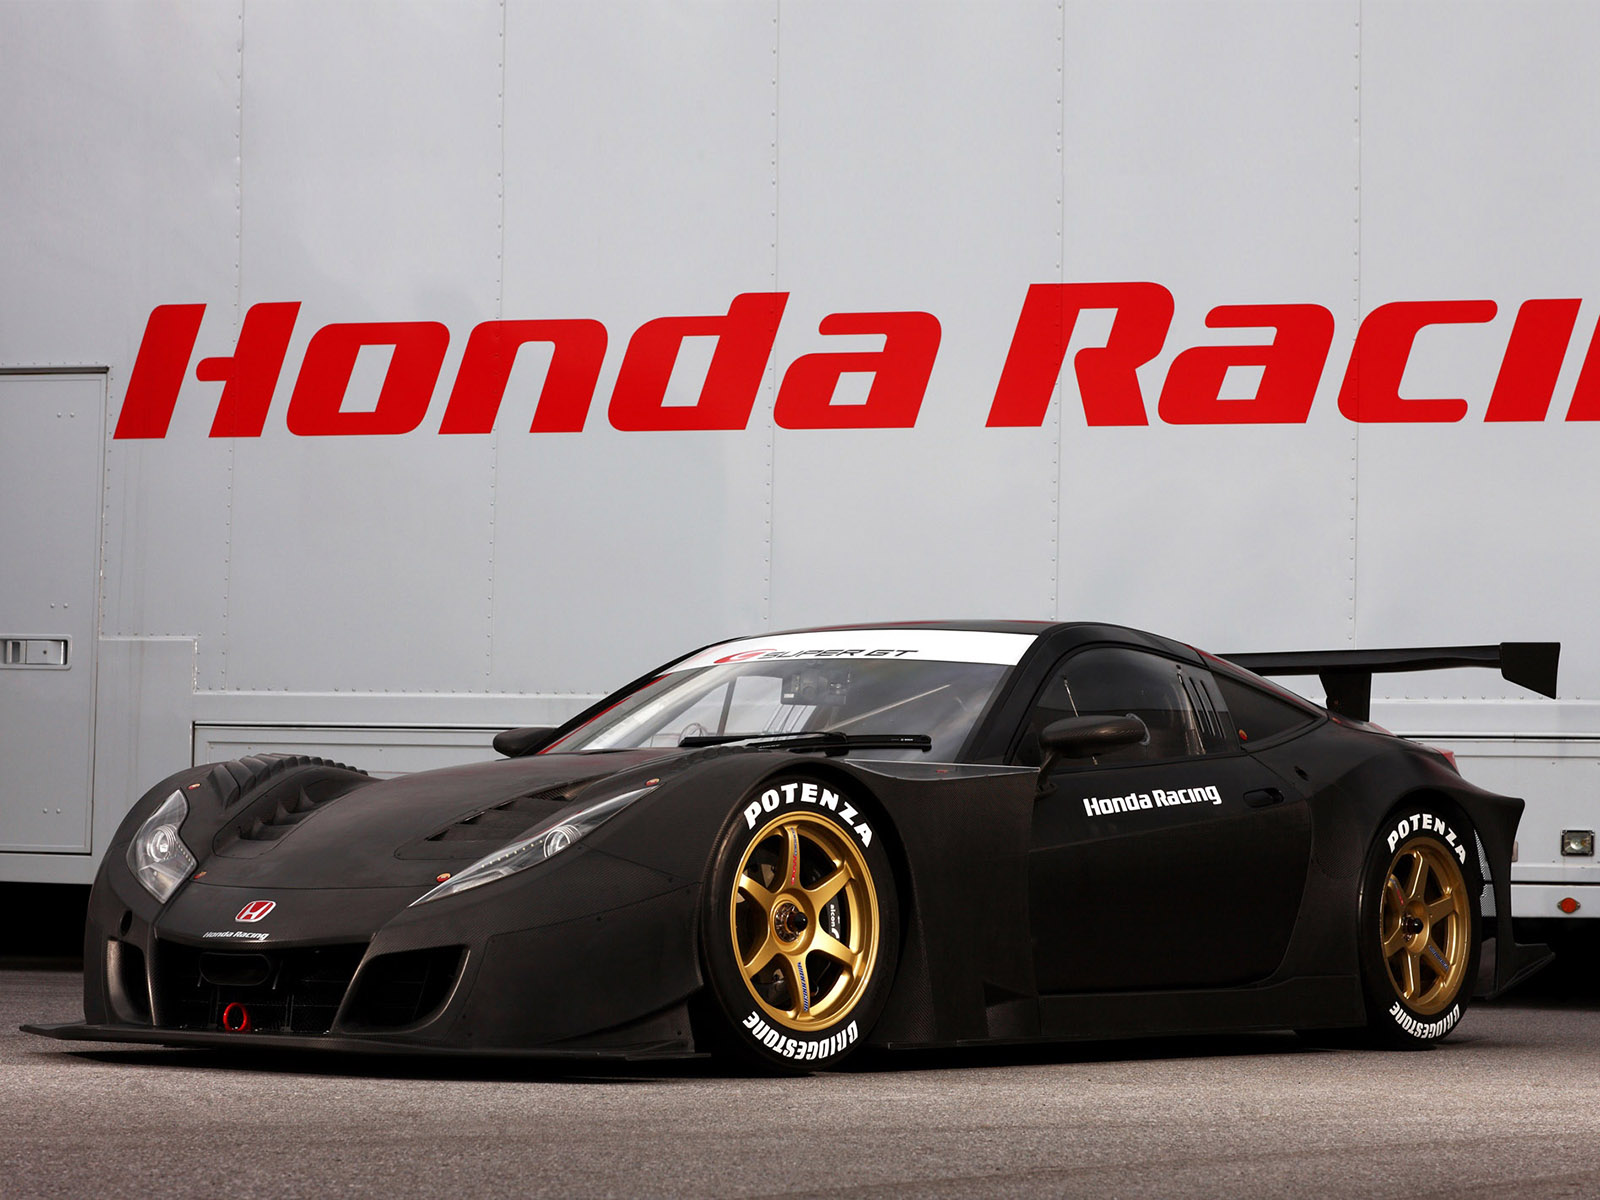 Free download wallpaper Honda, Racing, Vehicles, Super Gt Racing on your PC desktop